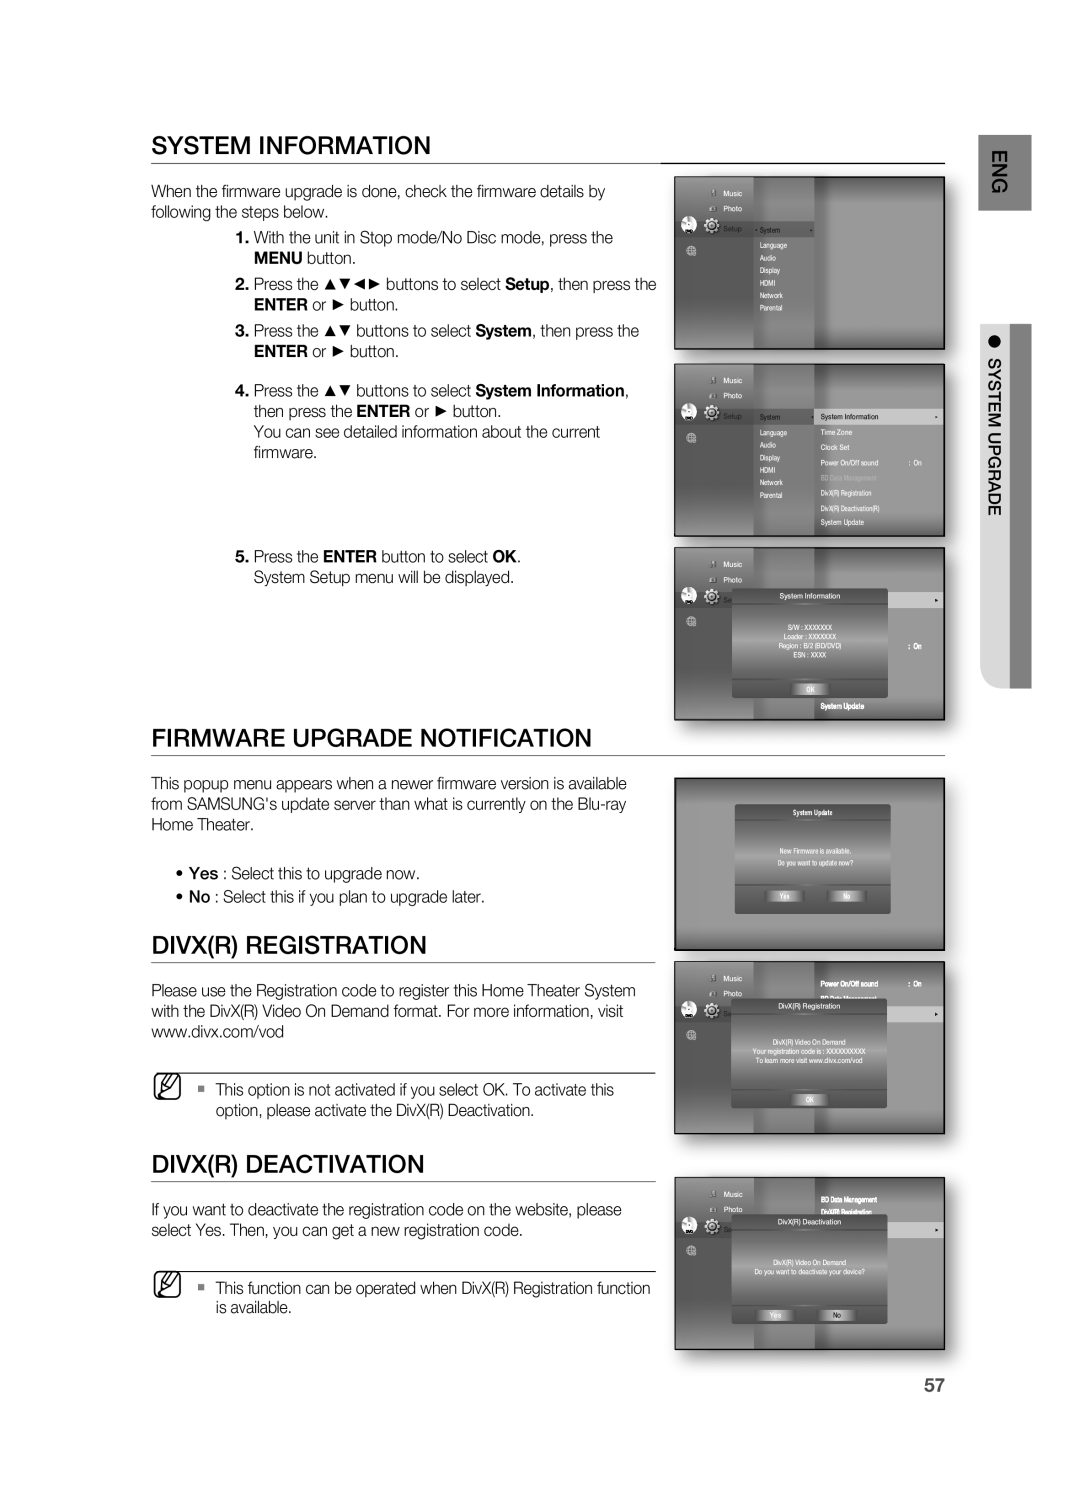 Samsung HT-BD8200 user manual System Information, Firmware Upgrade Notification, Divxr Registration, Divxr Deactivation 